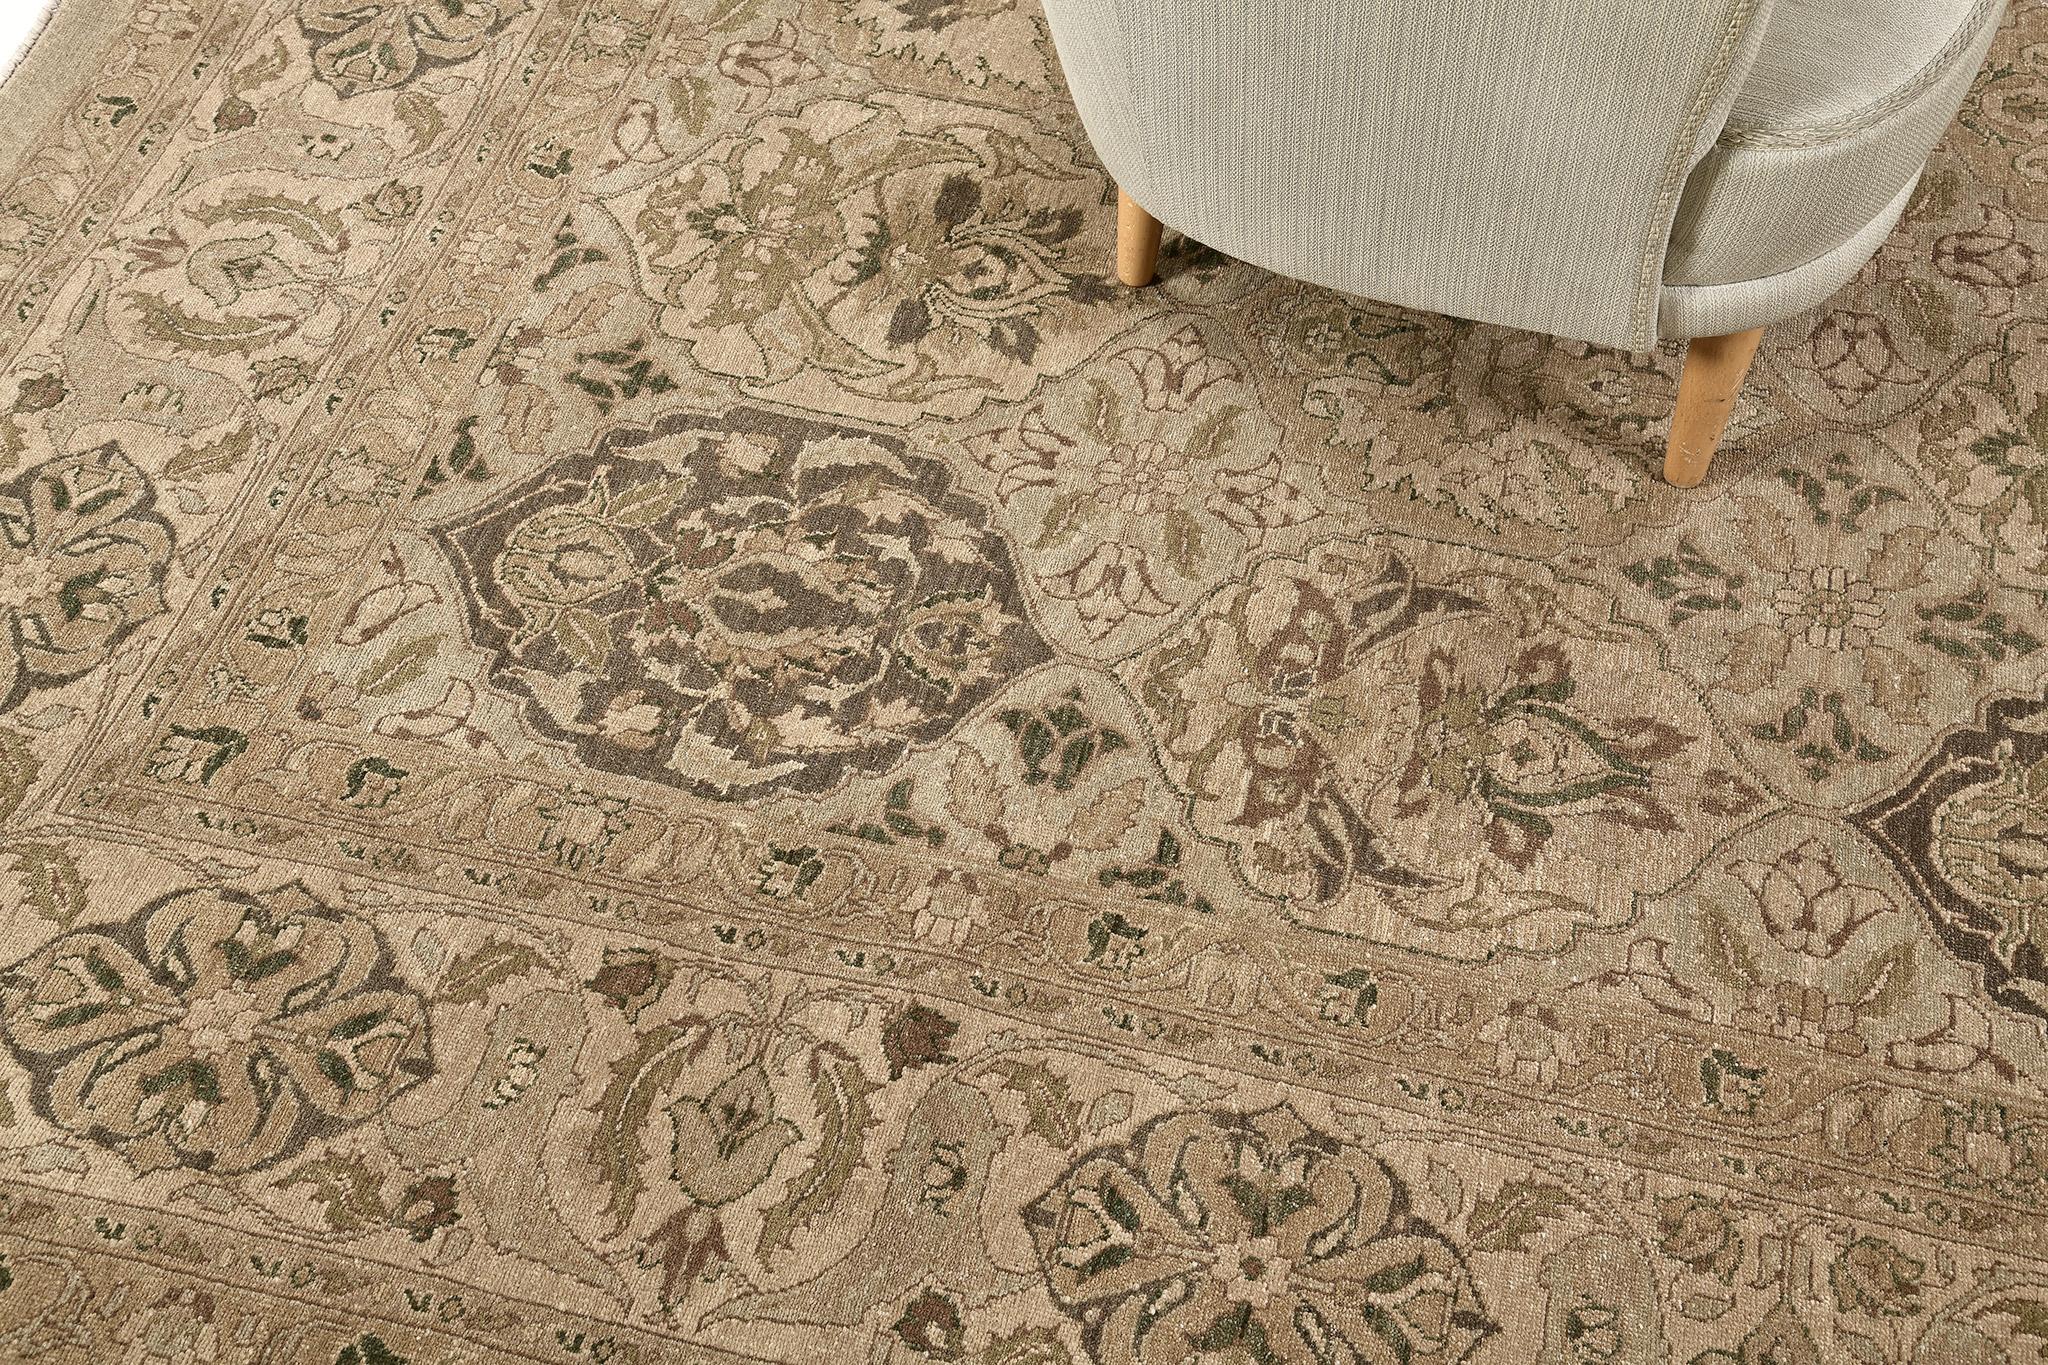 D'une composition classique et doté d'un magnifique motif de jardin à compartiments, ce tapis surdimensionné de Kerman reflète les tendances intemporelles des tapis d'Asie centrale. Une variété d'éléments botaniques, de fleurs et de vignes sont